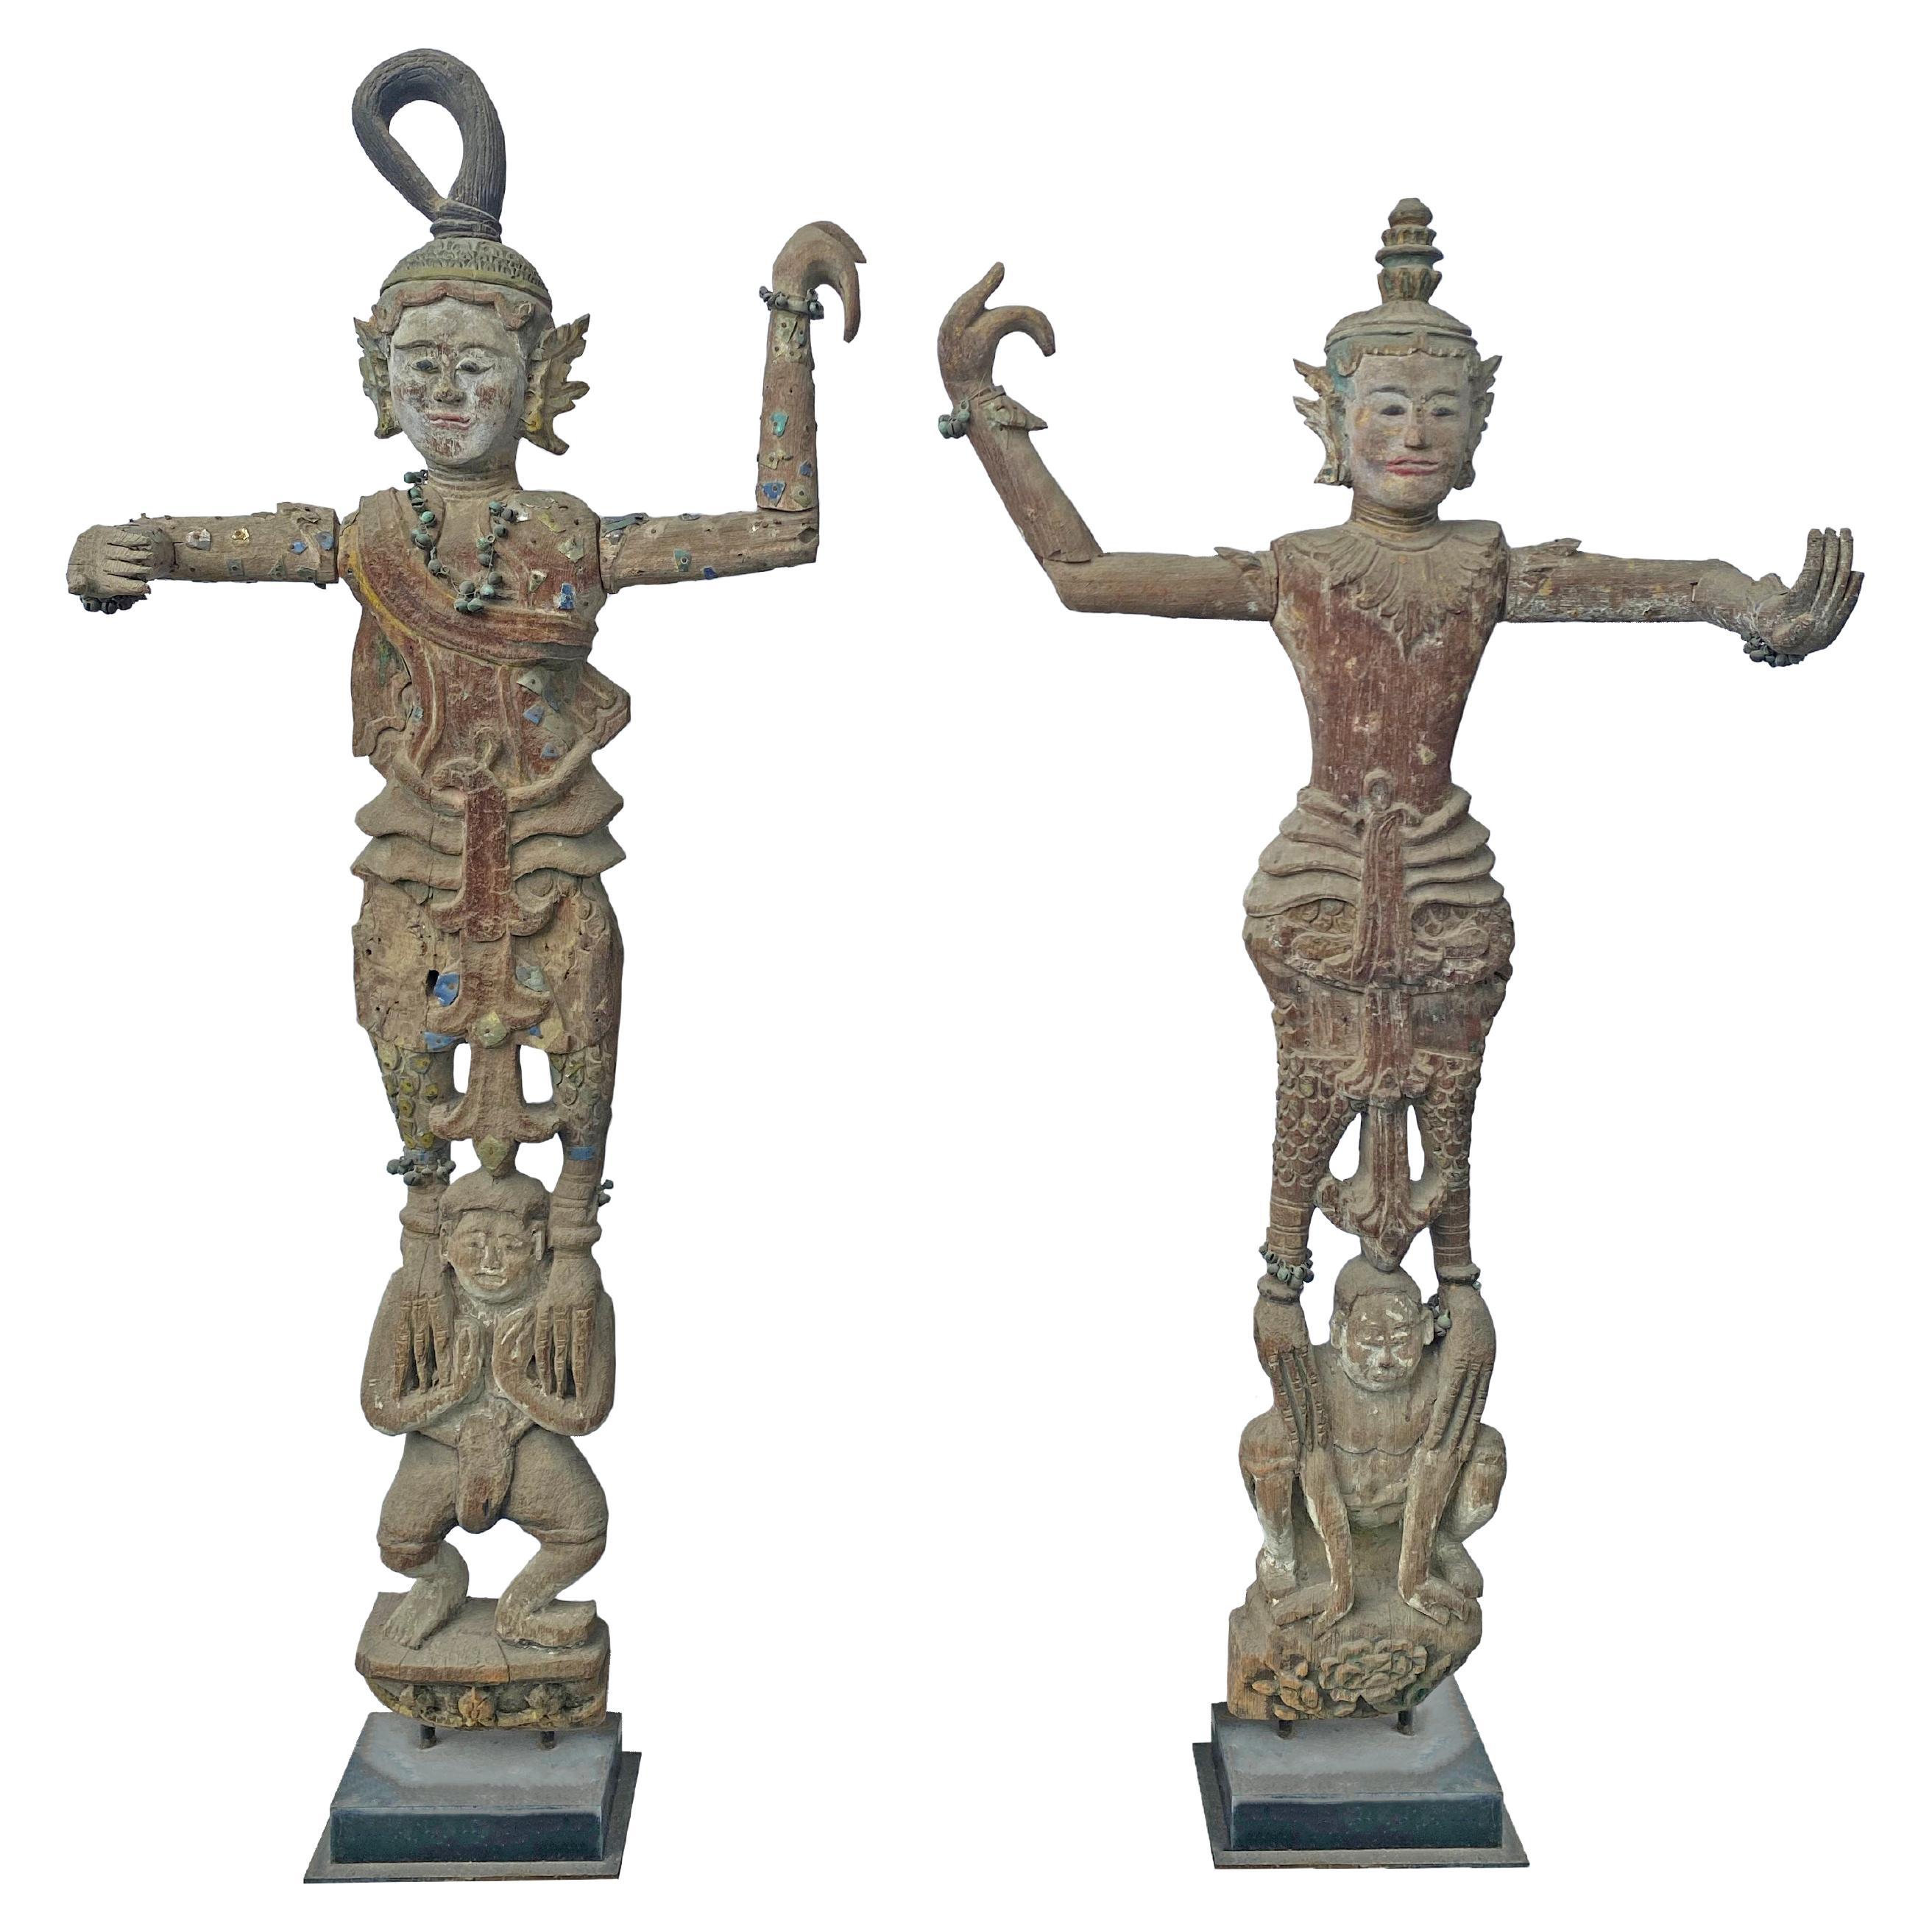 Paar birmanische Geisterschützen aus Holz und Teakholz mit Nat-Statue, frühes 20. Jahrhundert